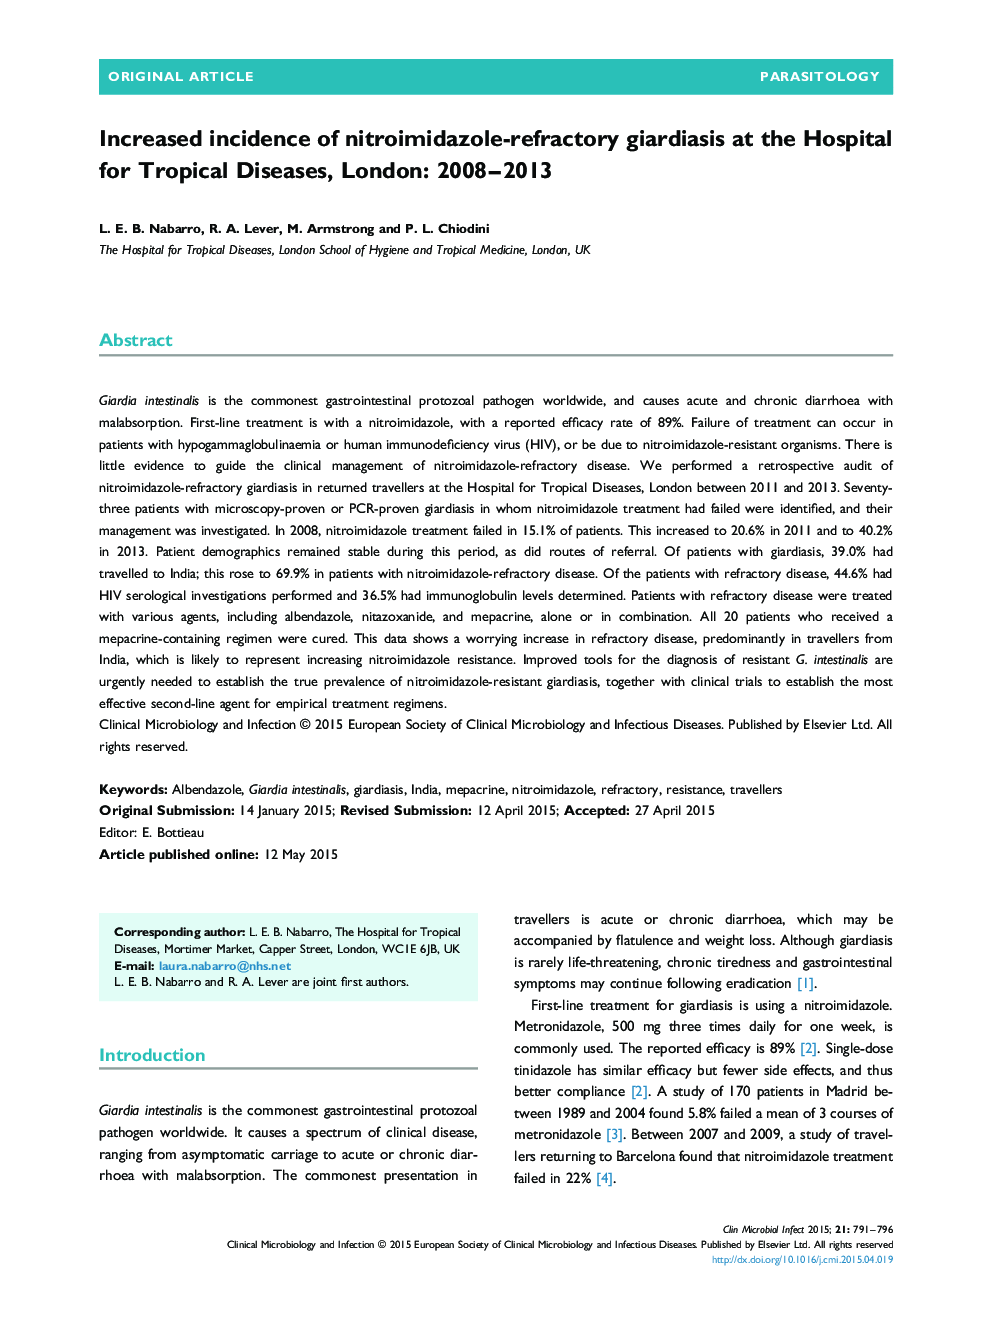 افزایش شیوع جیاردیاز مقاوم به درمان نیترویمیدازول در بیمارستان بیماری های گرمسیری در لندن 2008-2013 